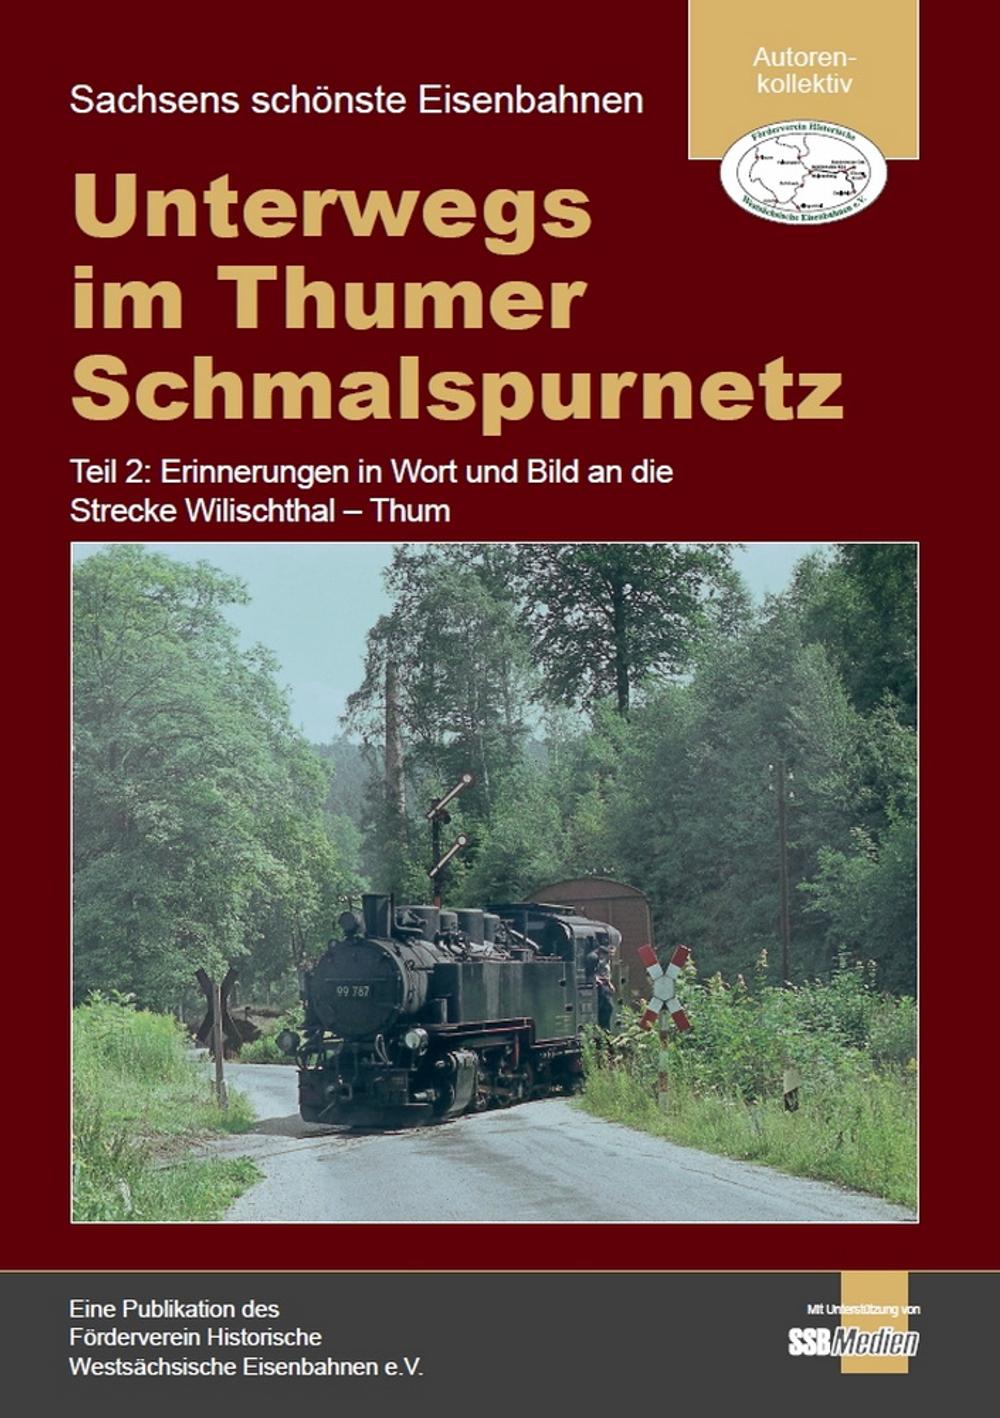 Cover Broschüre "Unterwegs im Thumer Schmalspurnetz Teil 2: Erinnerungen in Wort und Bild an die Strecke Wilischthal – Thum"